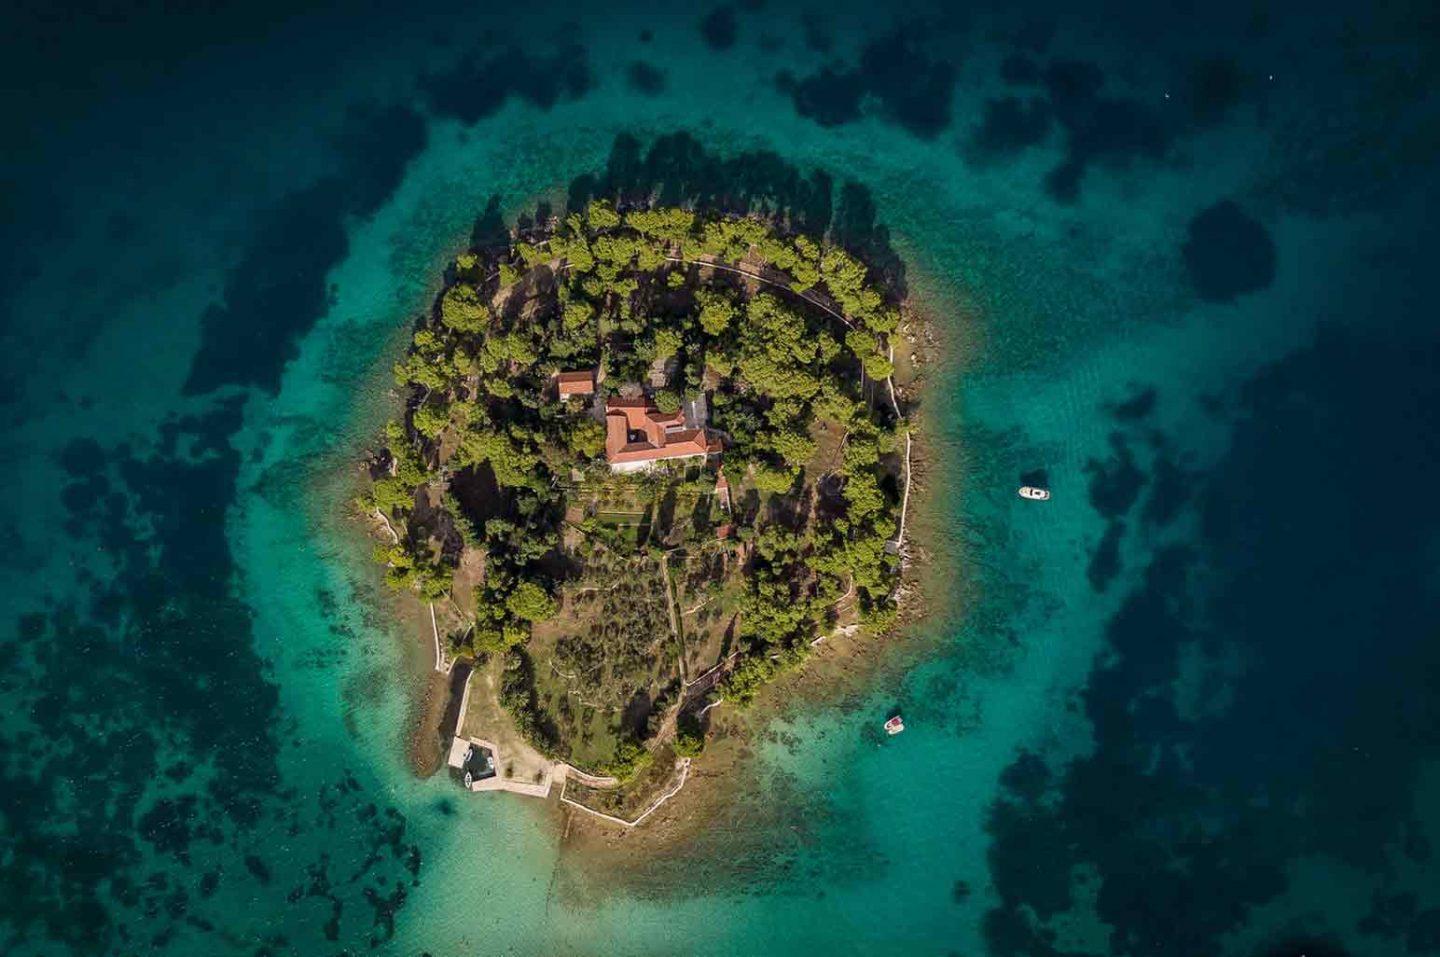 Islands off the Coast of Croatia